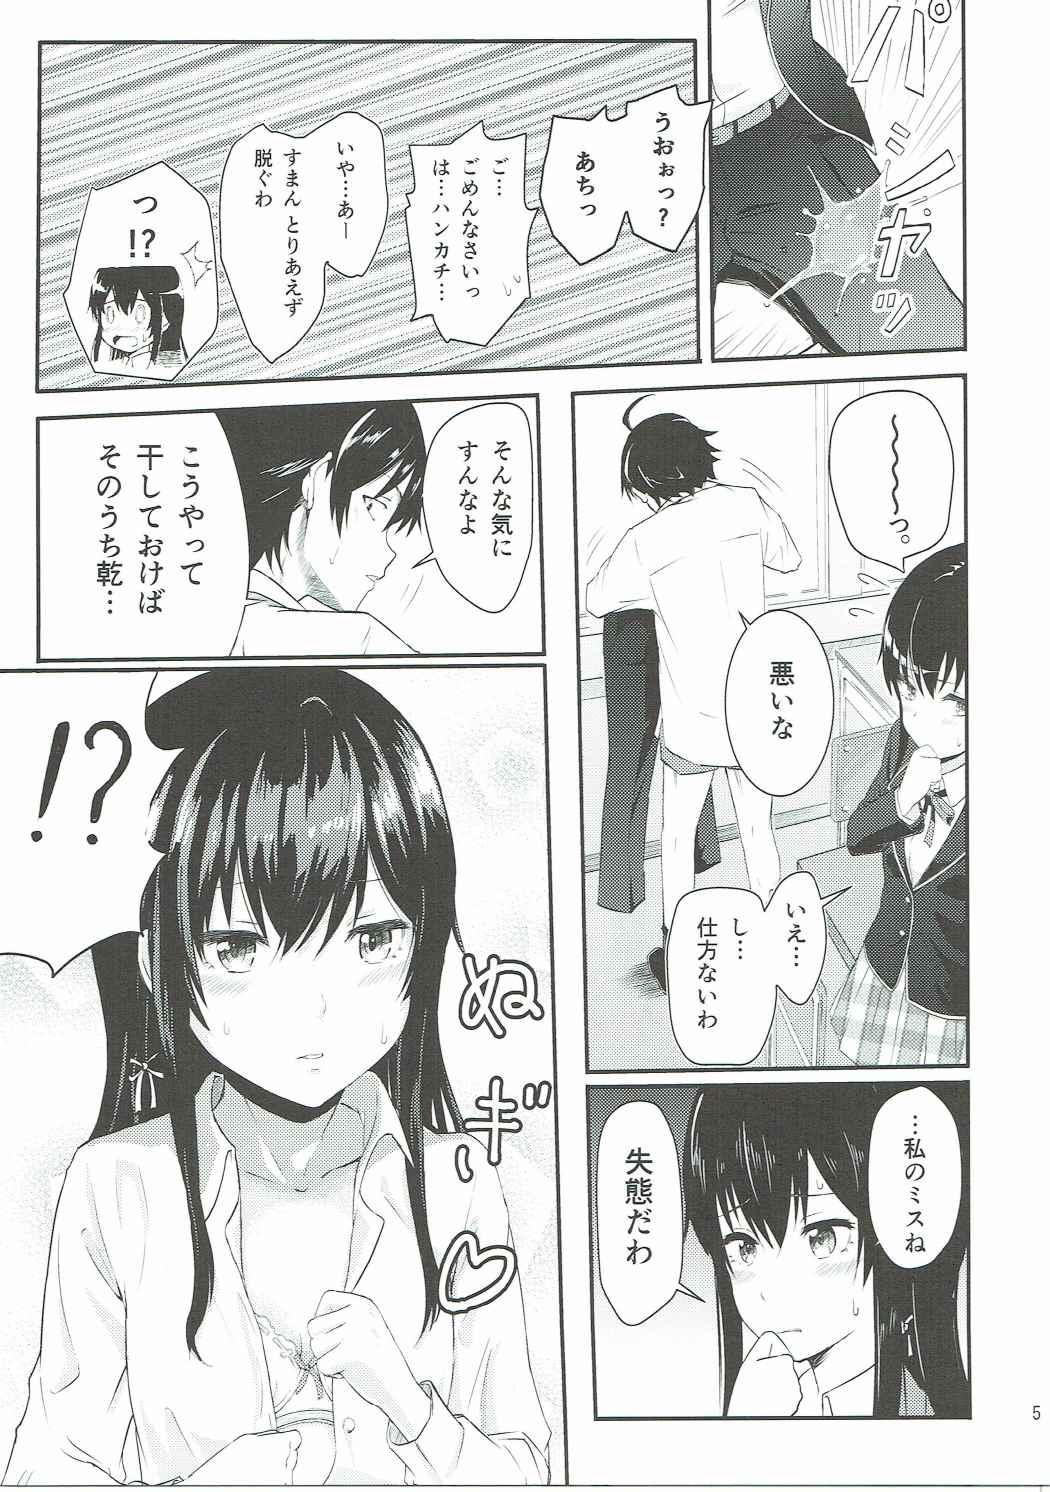 Chupa Yukino - Yahari ore no seishun love come wa machigatteiru Dando - Page 4